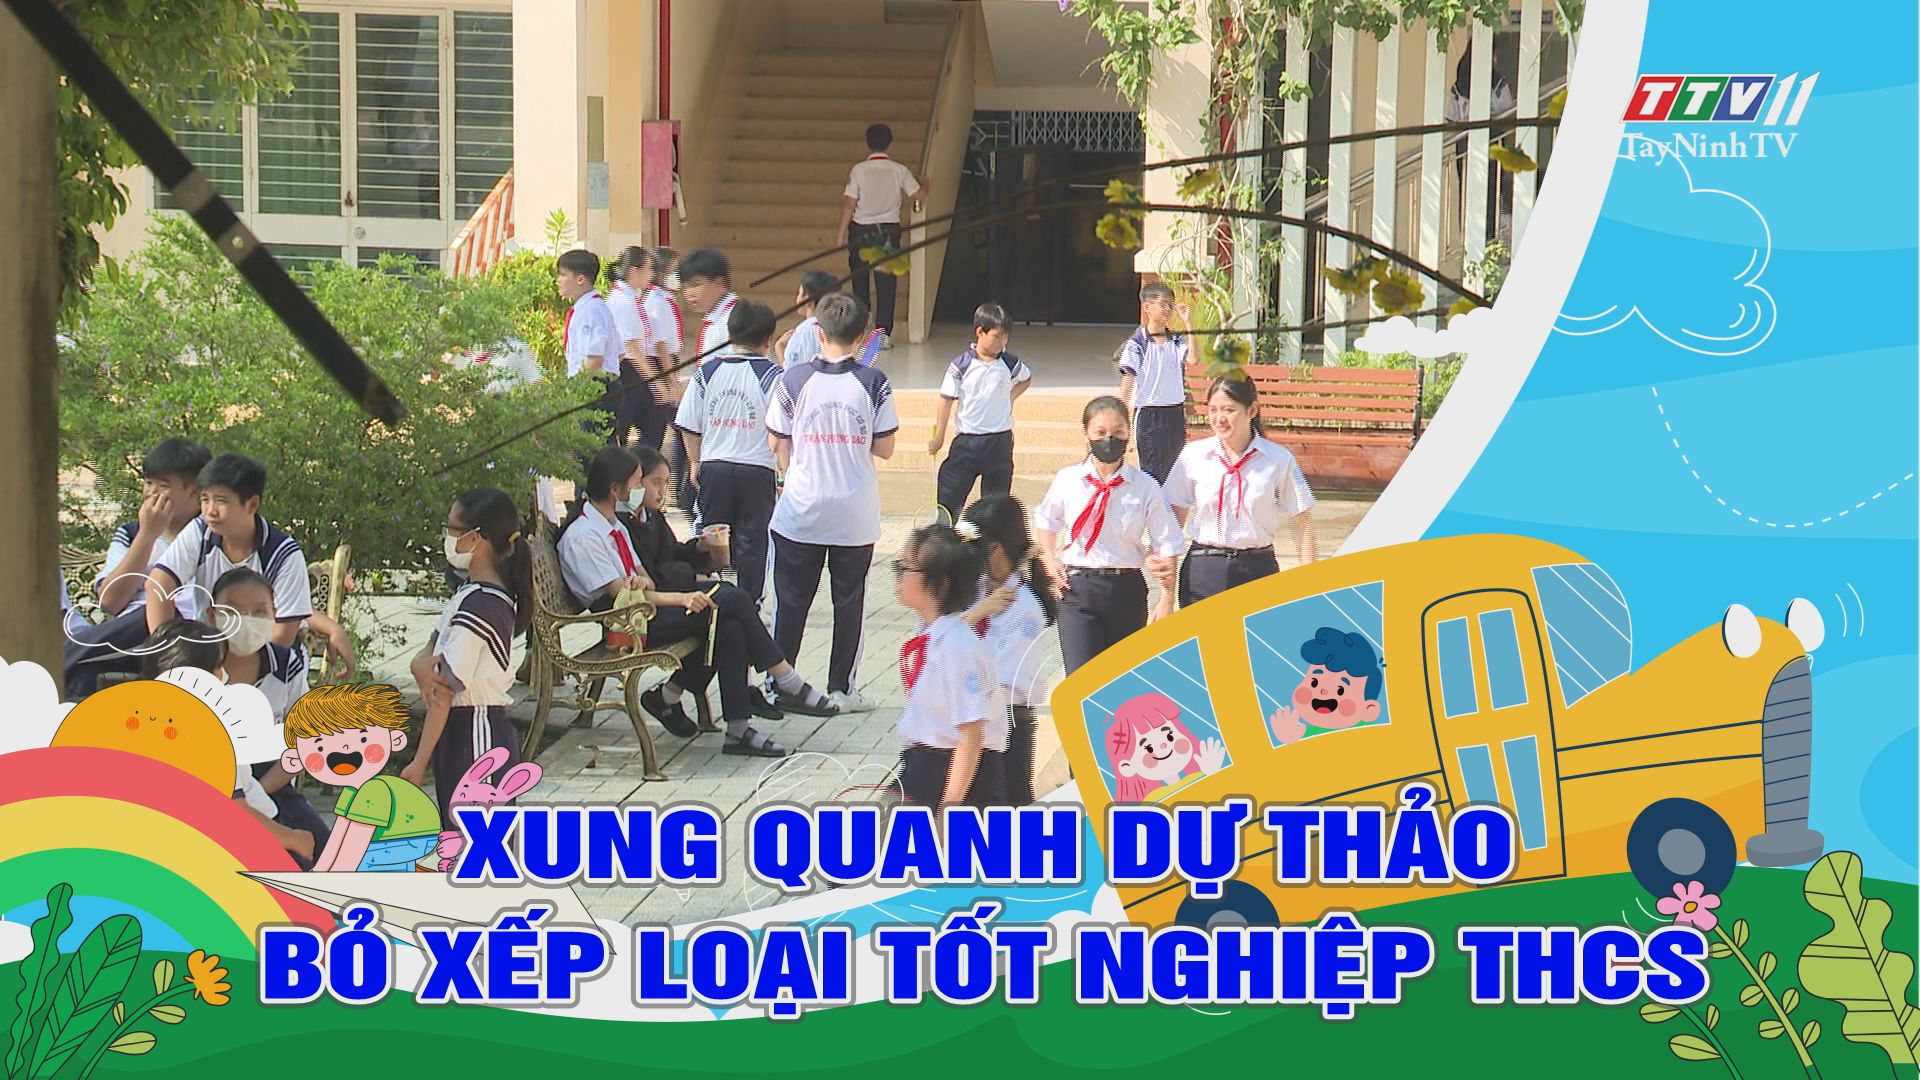 Xung quanh dự thảo bỏ xếp loại tốt nghiệp trung học cơ sở | Giáo dục và đào tạo | TayNinhTV